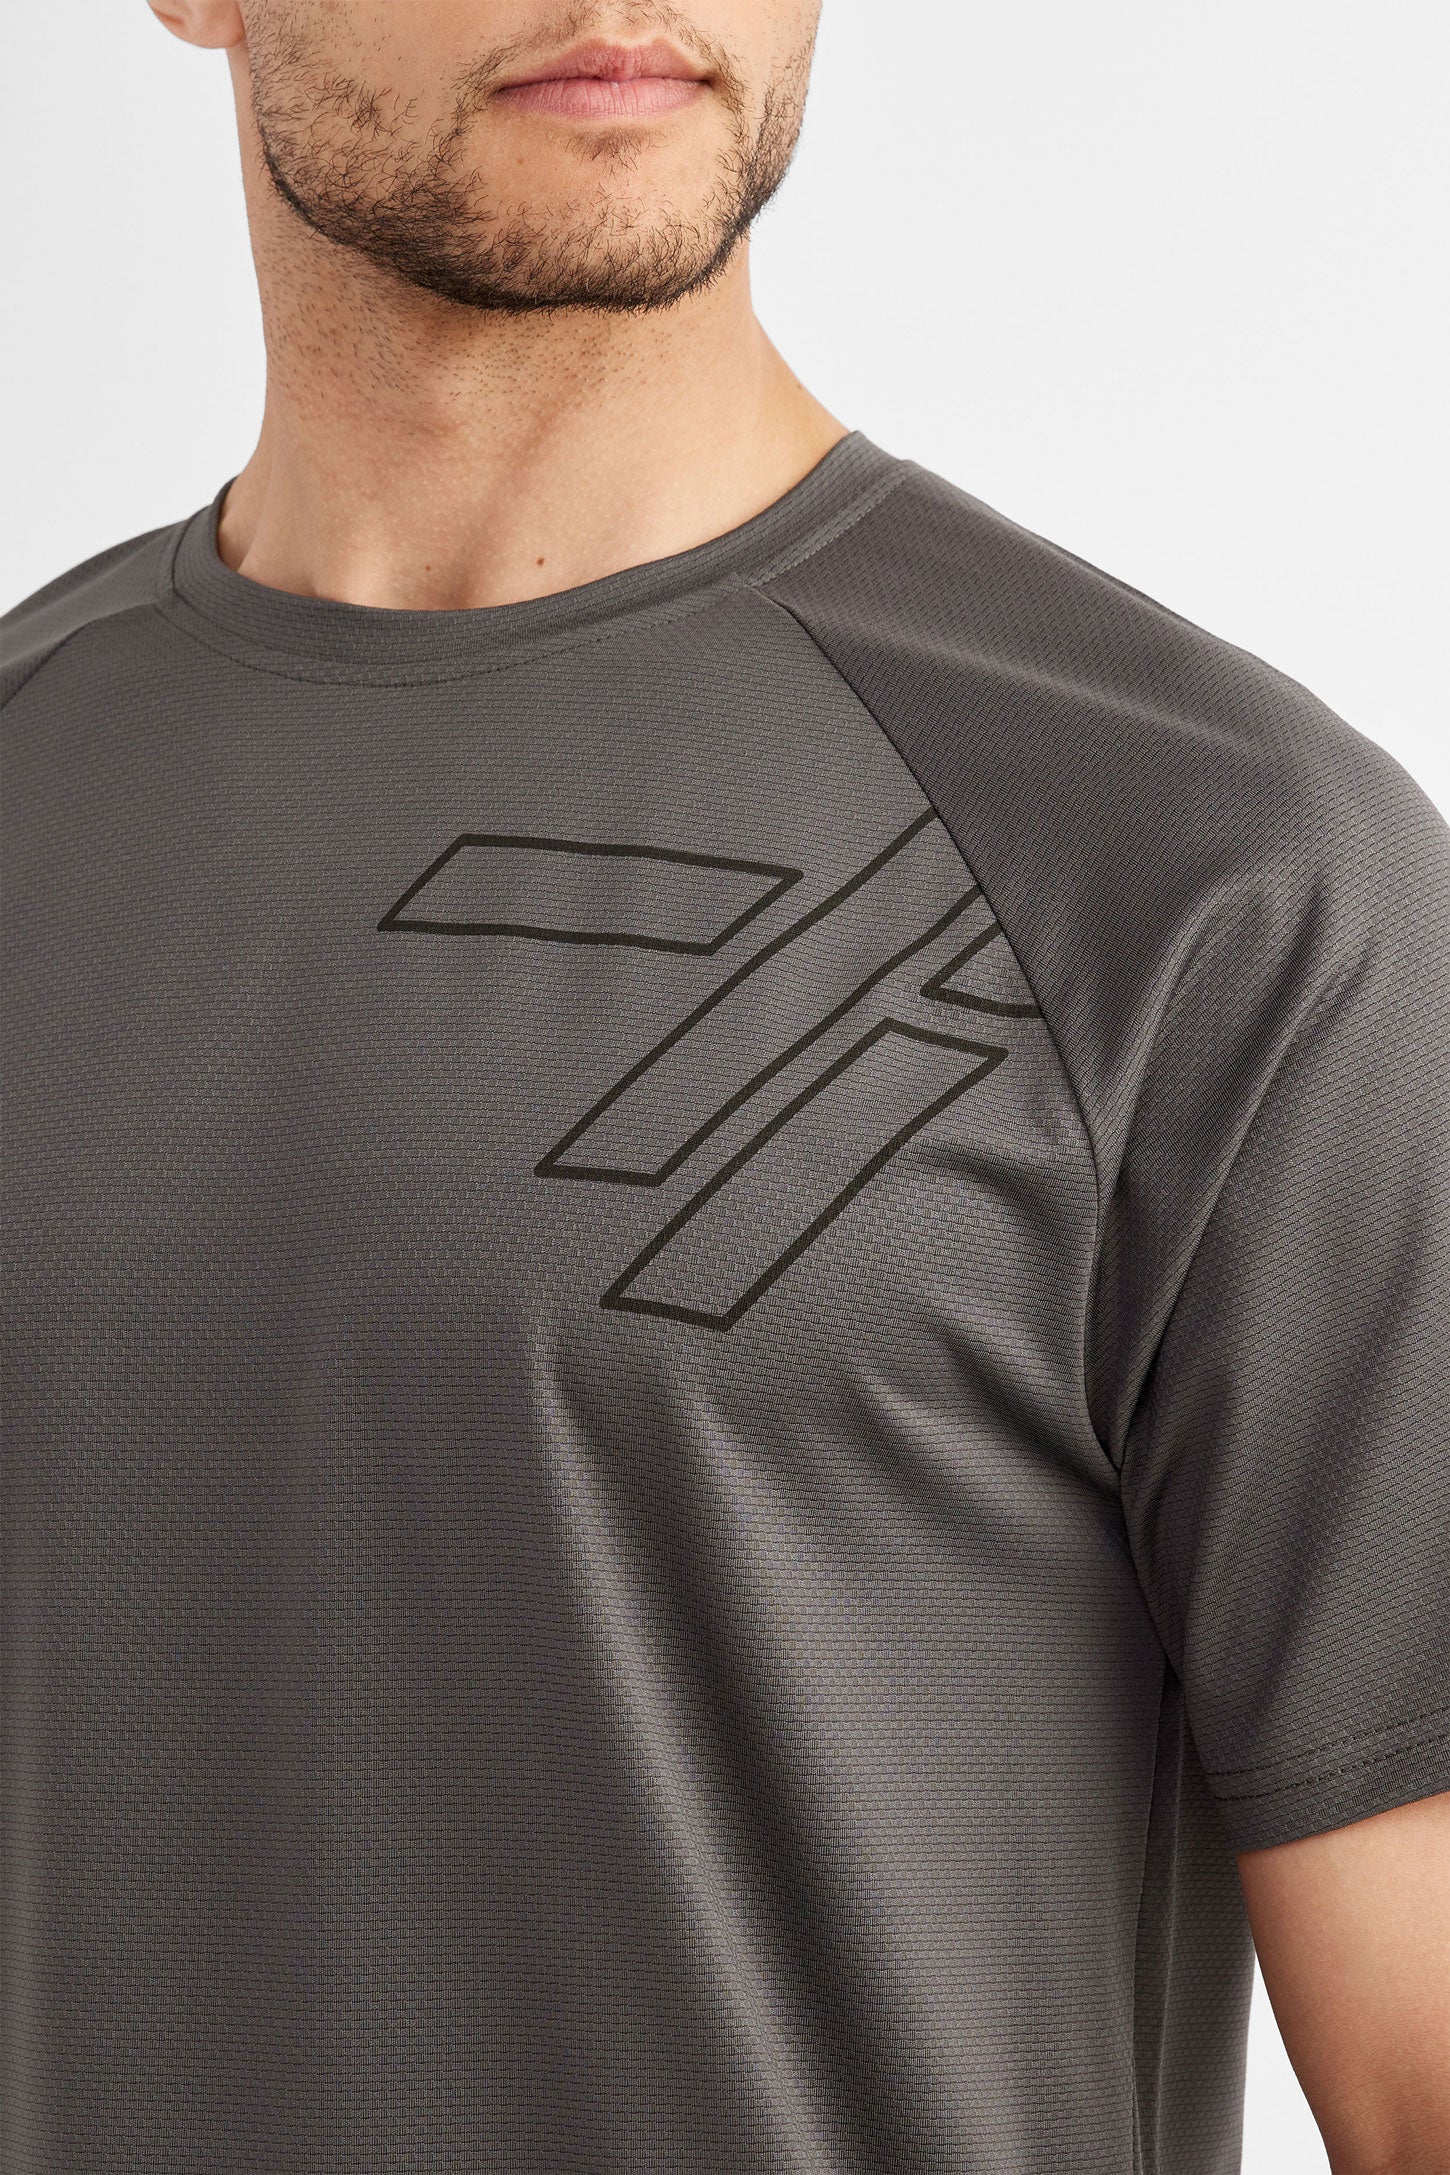 T-shirt athlétique - Homme && GRIS FONCE